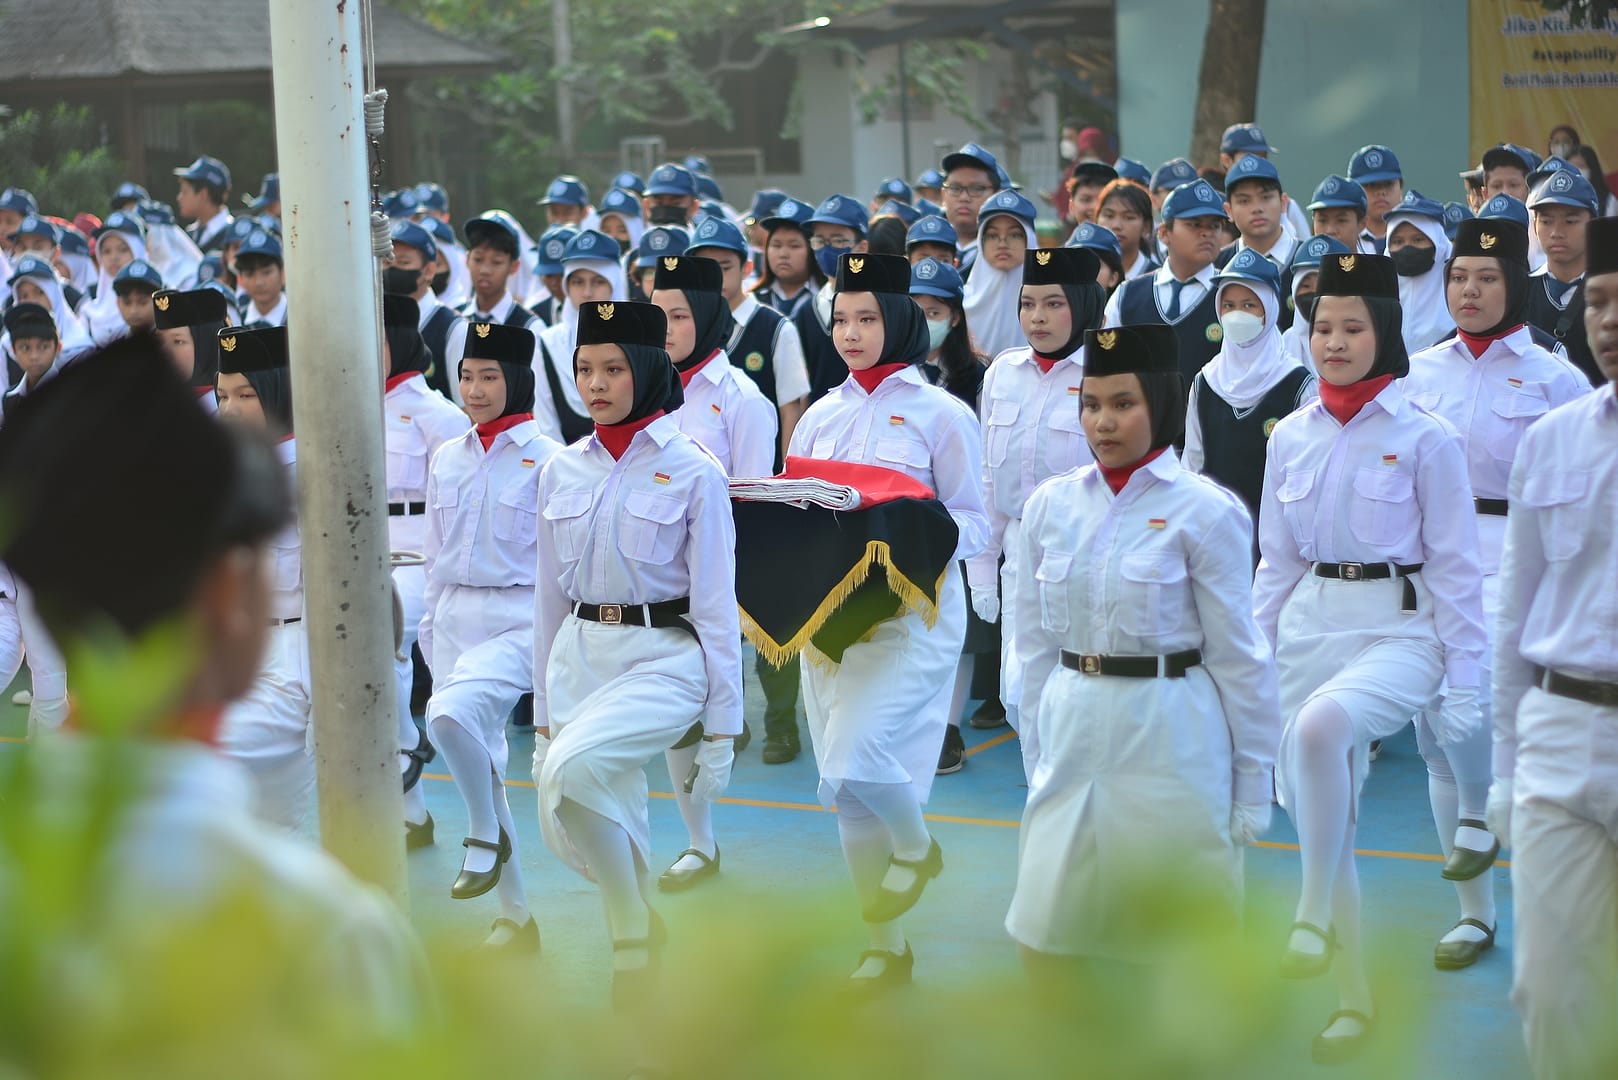 Peringatan HUT ke-78 RI di Sekolah Budi Mulia Tangerang Berjalan Khidmat dan Lancar